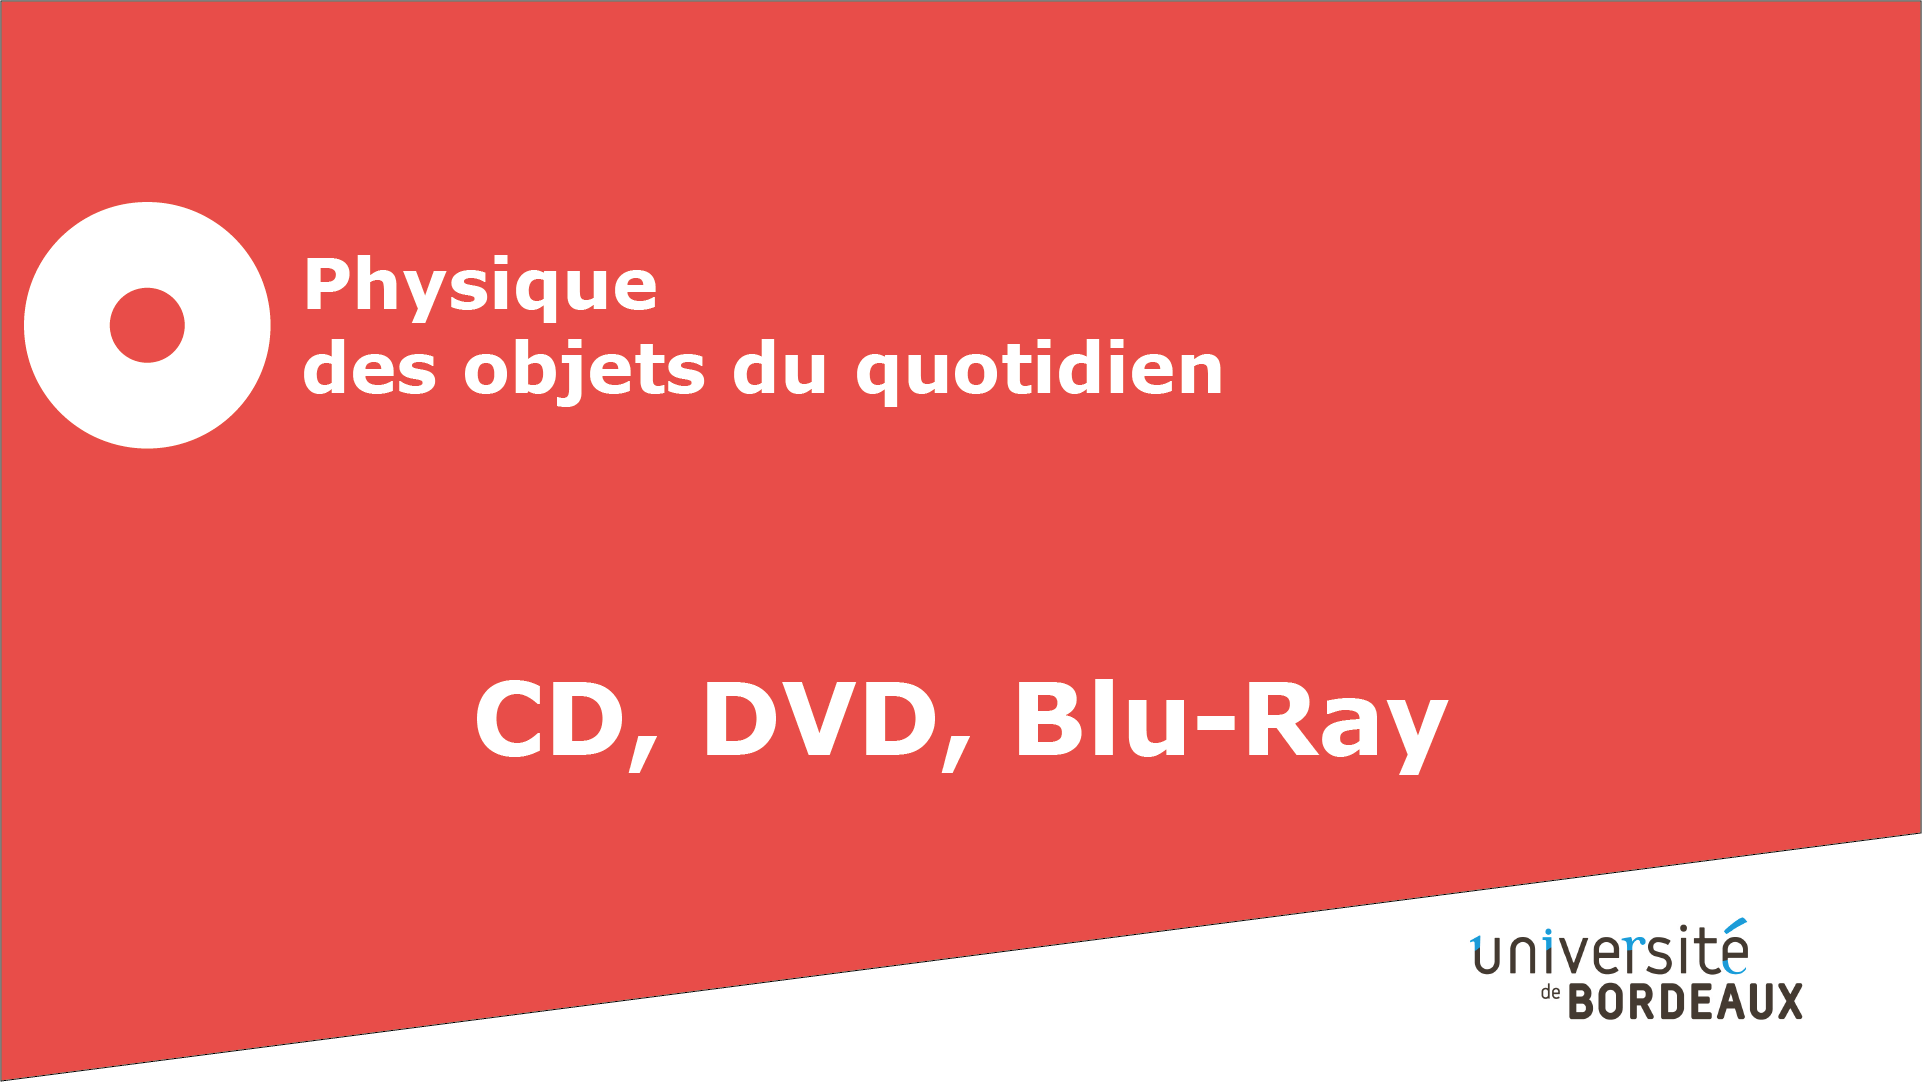 10 - CD, DVD, Blu-ray / Les supports optiques : des réseaux de diffraction